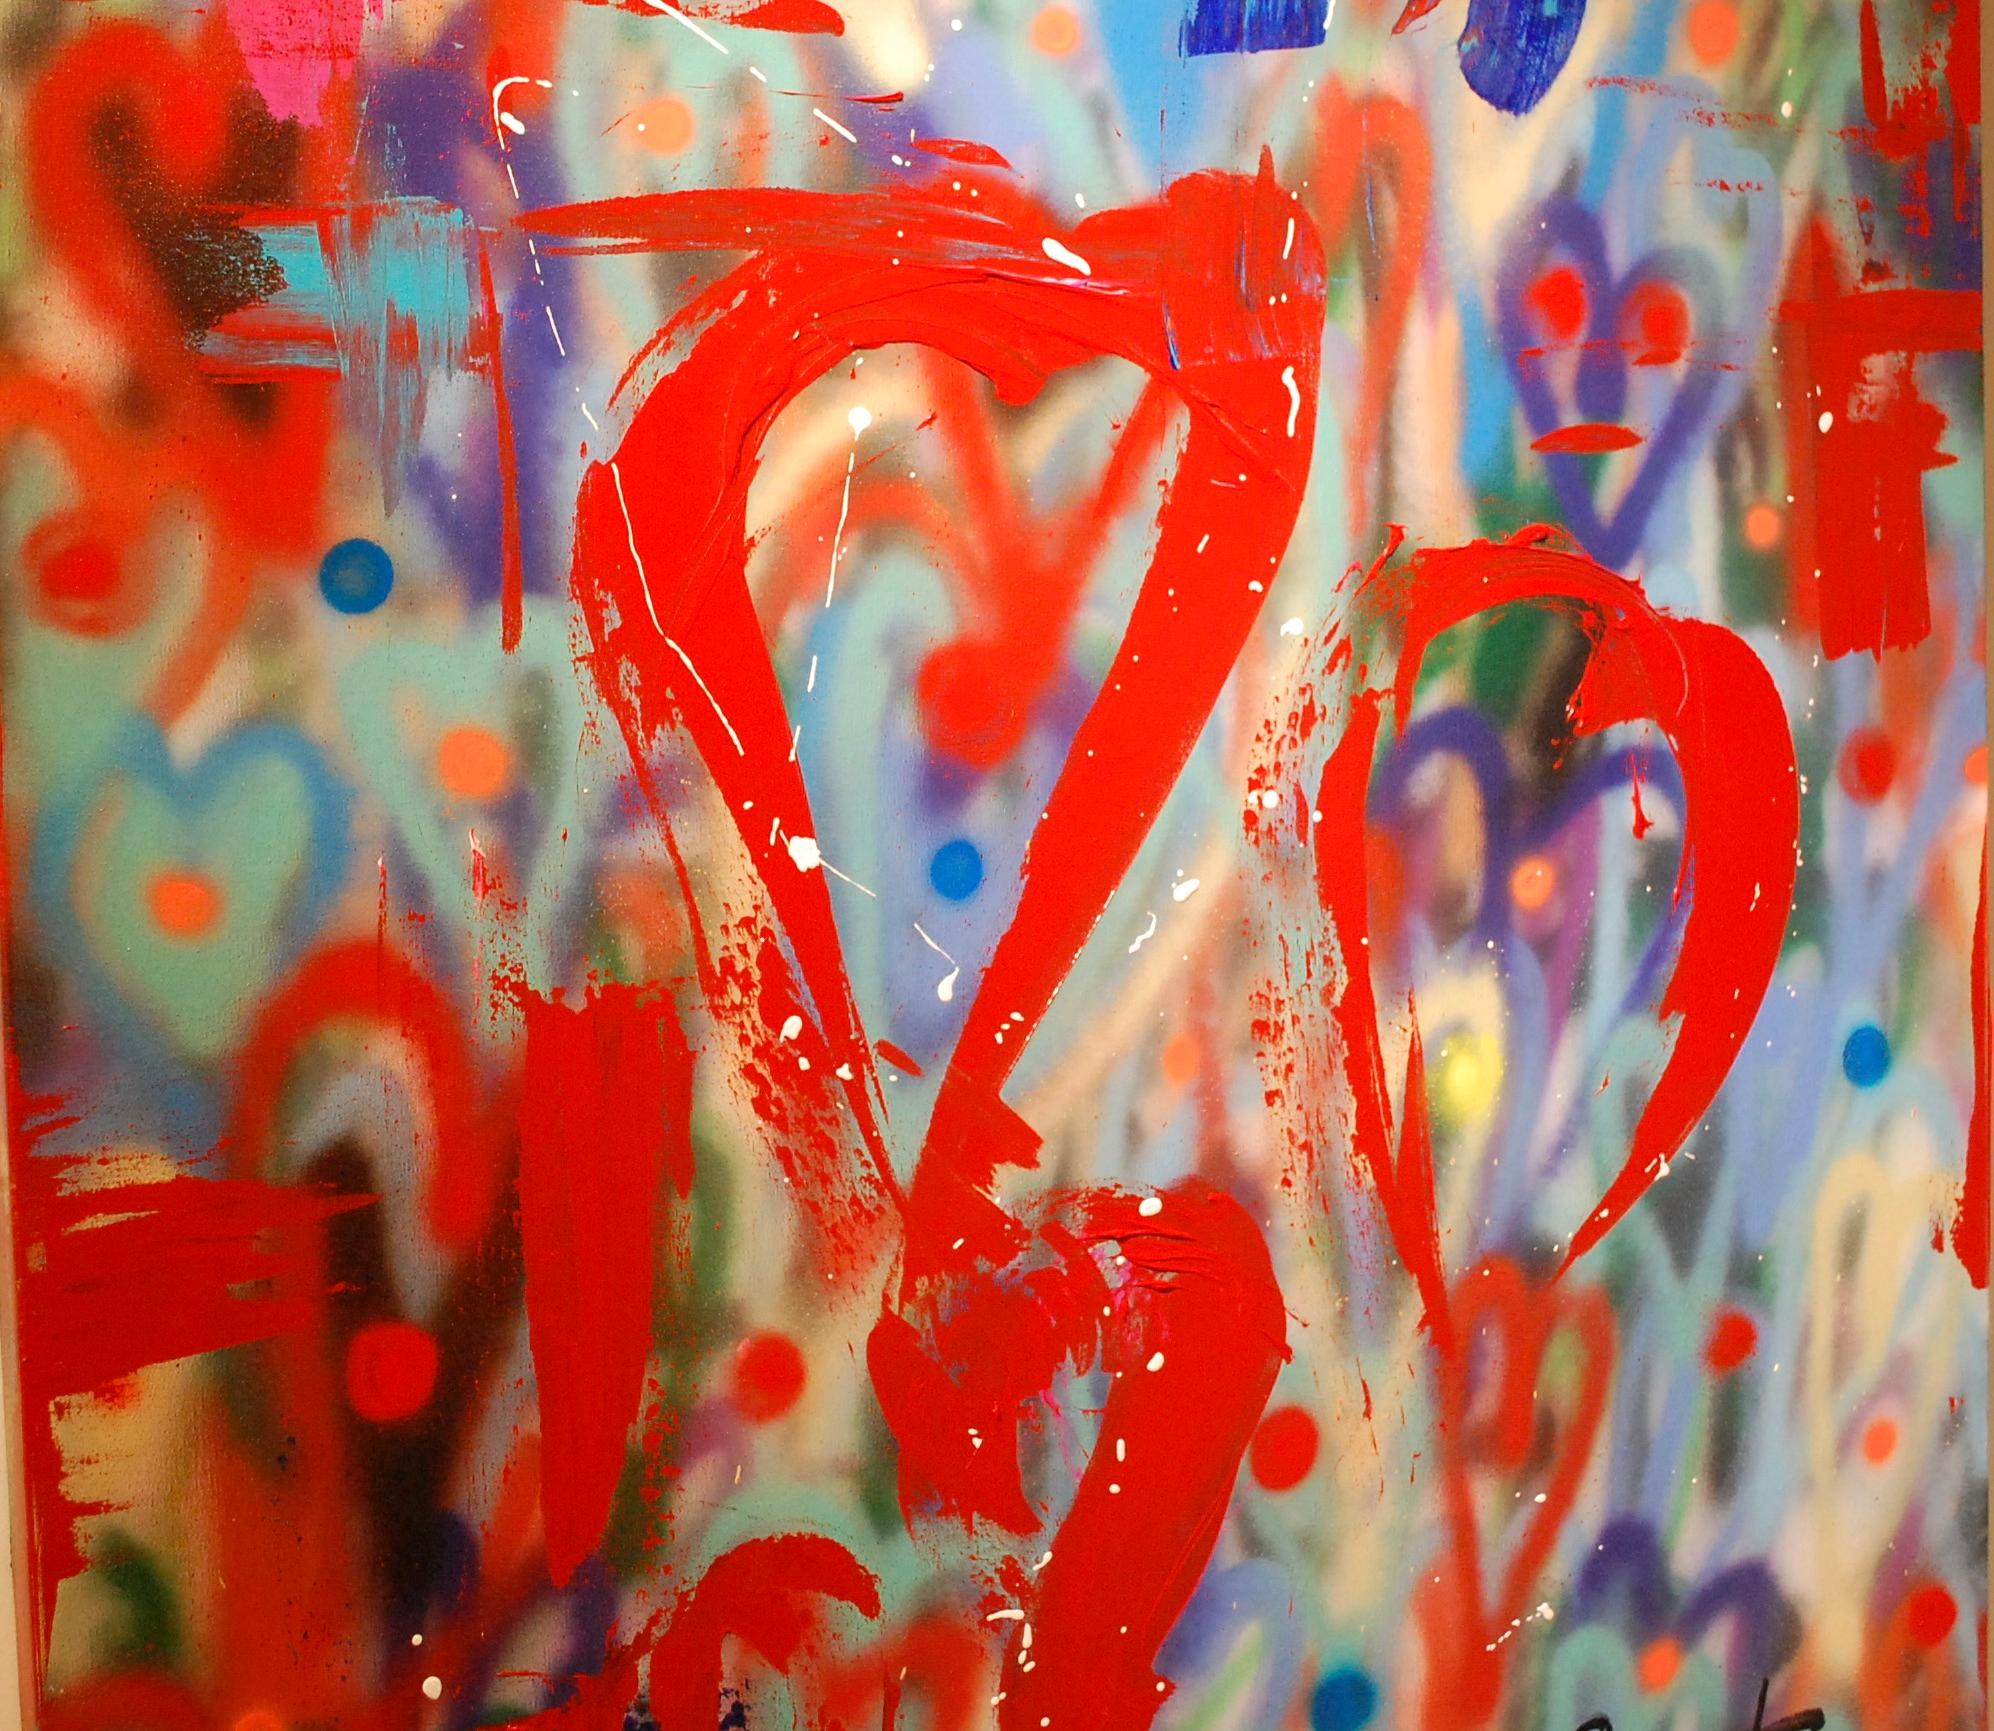 L'amour #1 
Nitro-Acryl, Acrylfarbe auf Leinwand im Galeriewickel. Fotos des Gemäldes mit und ohne Licht.
Keith Carringtons Erfahrungen haben ihn dazu gebracht, seine Talente durch die flüssigen und anspruchsvollen Medien Aquarell und Tinte